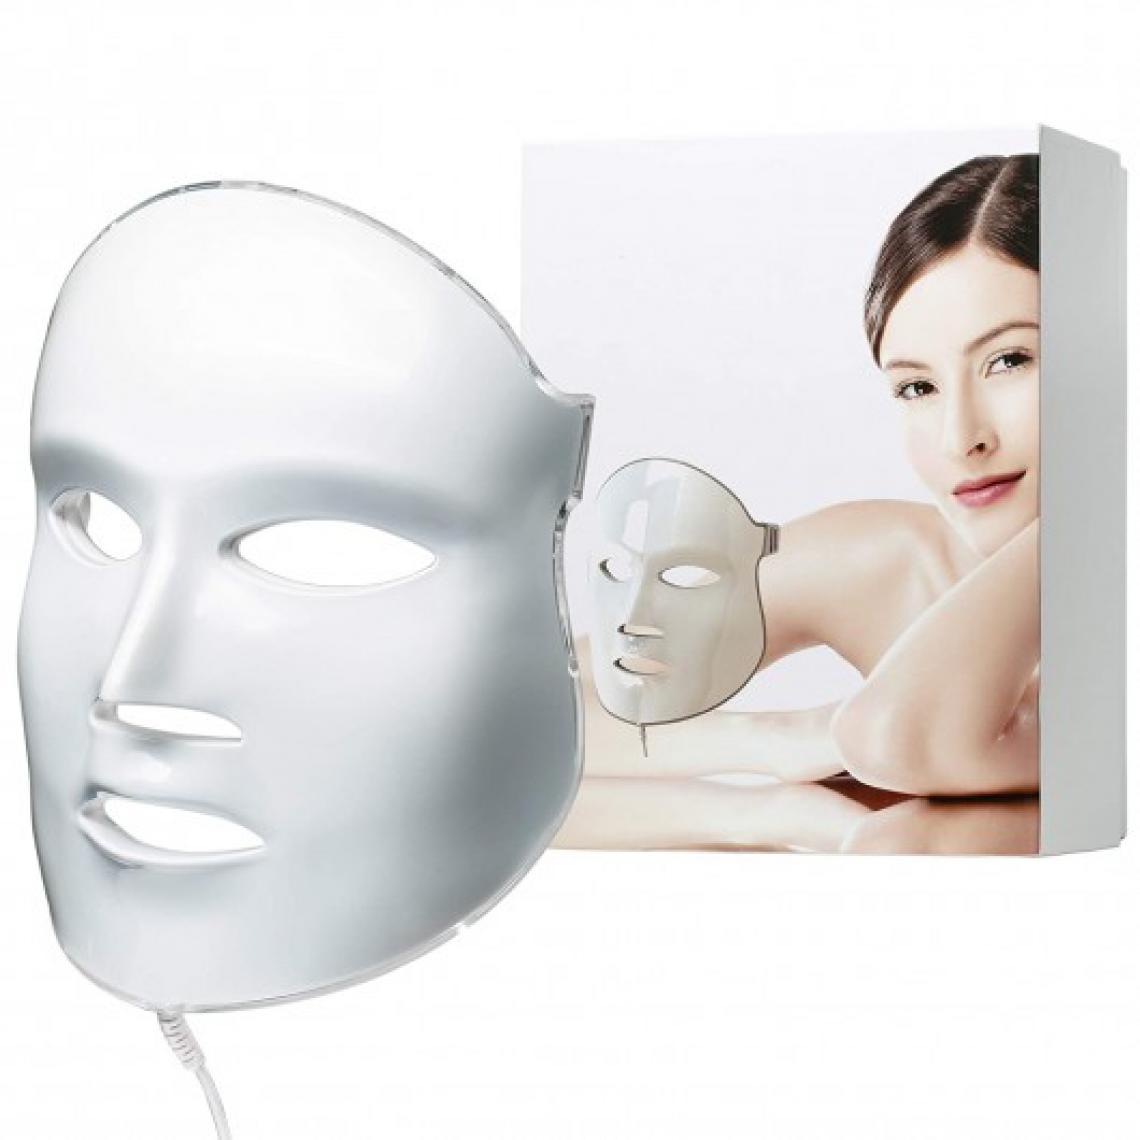 Aphrona - Aphrona LED facial mask, le masque idéal pour votre visage - Autre appareil de mesure